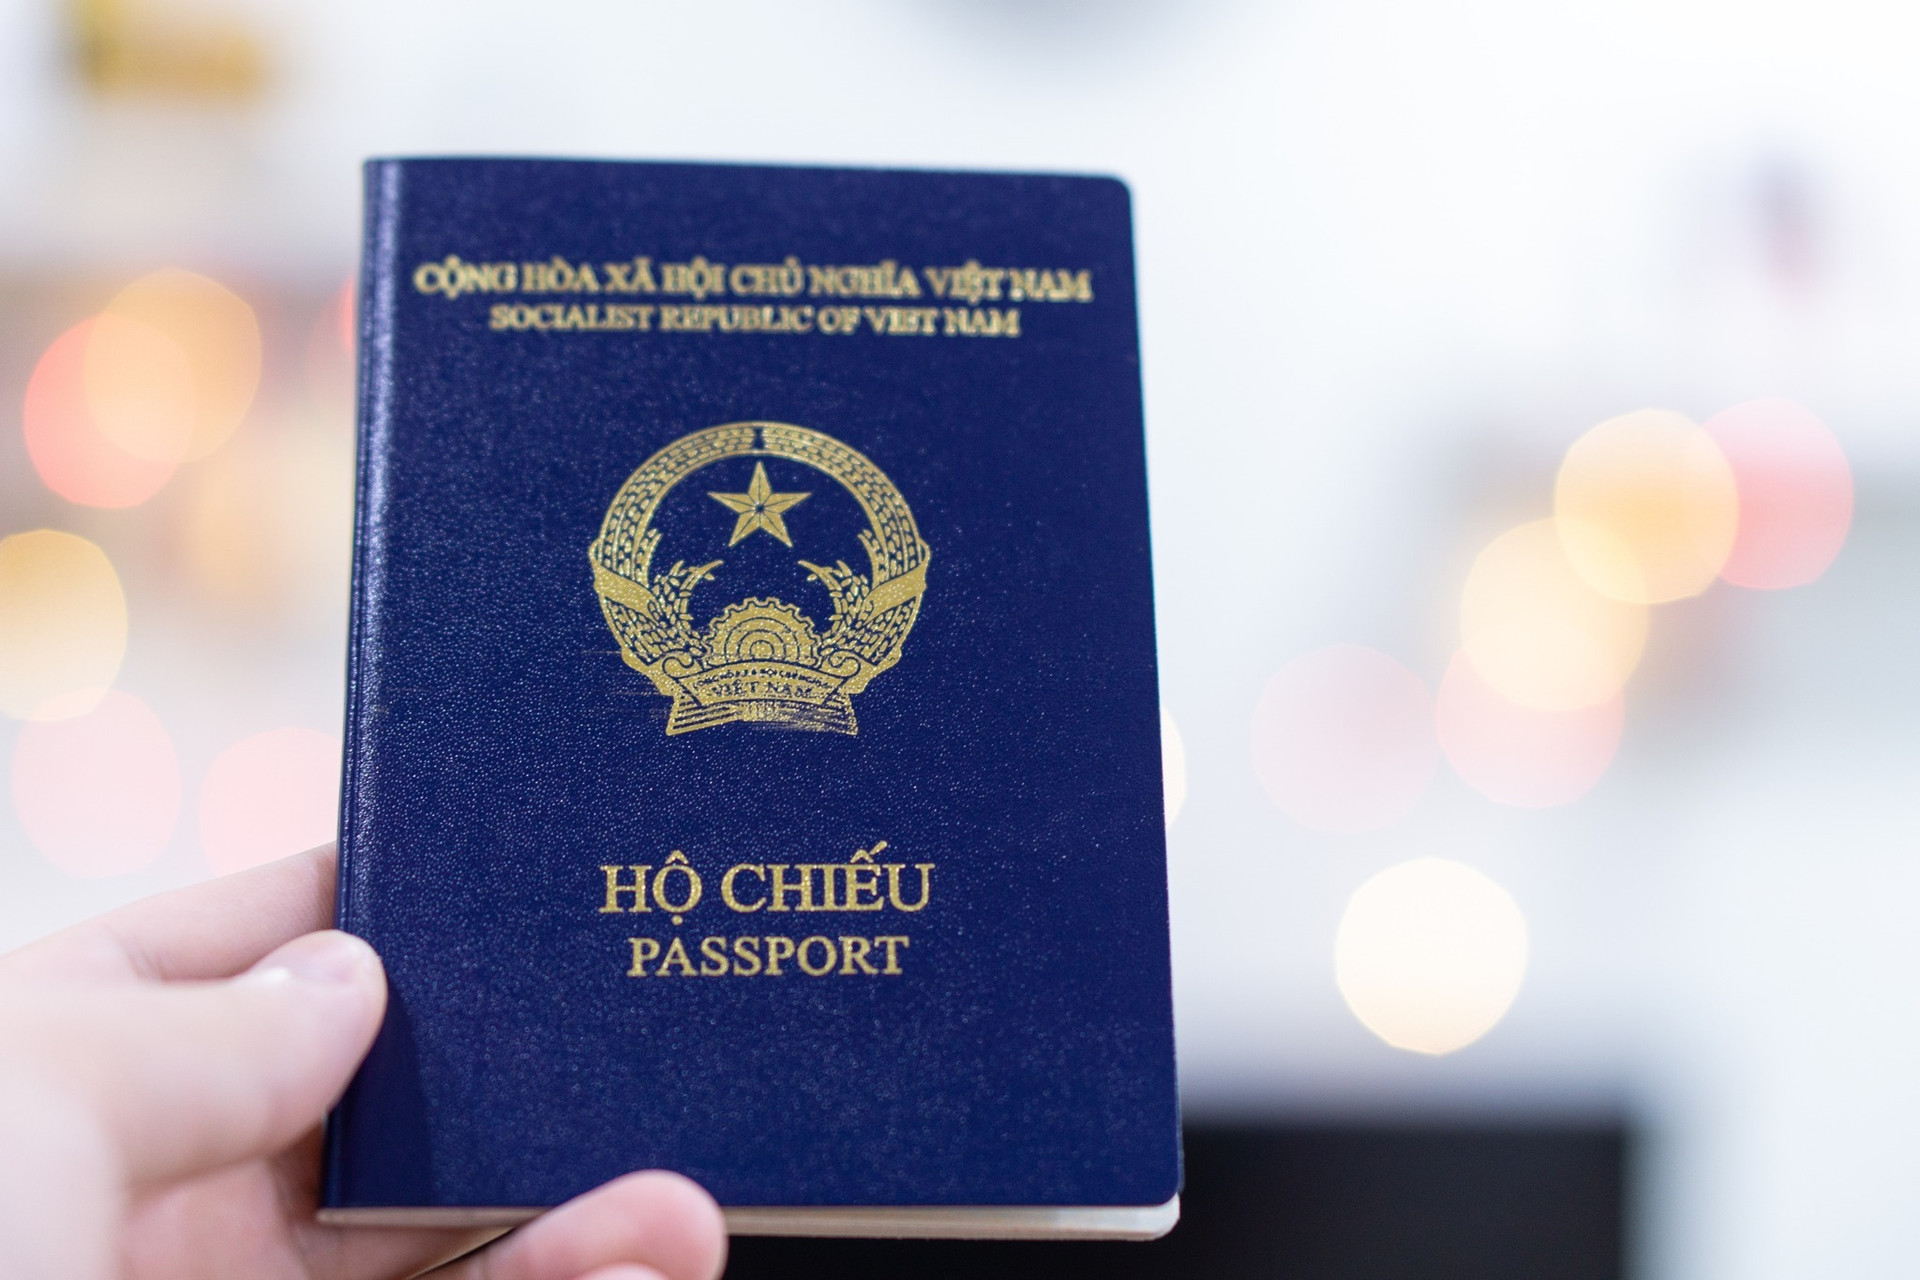 Hộ chiếu mới của Việt Nam xin thị thực Mỹ phải bổ sung thông tin nơi sinh - 1